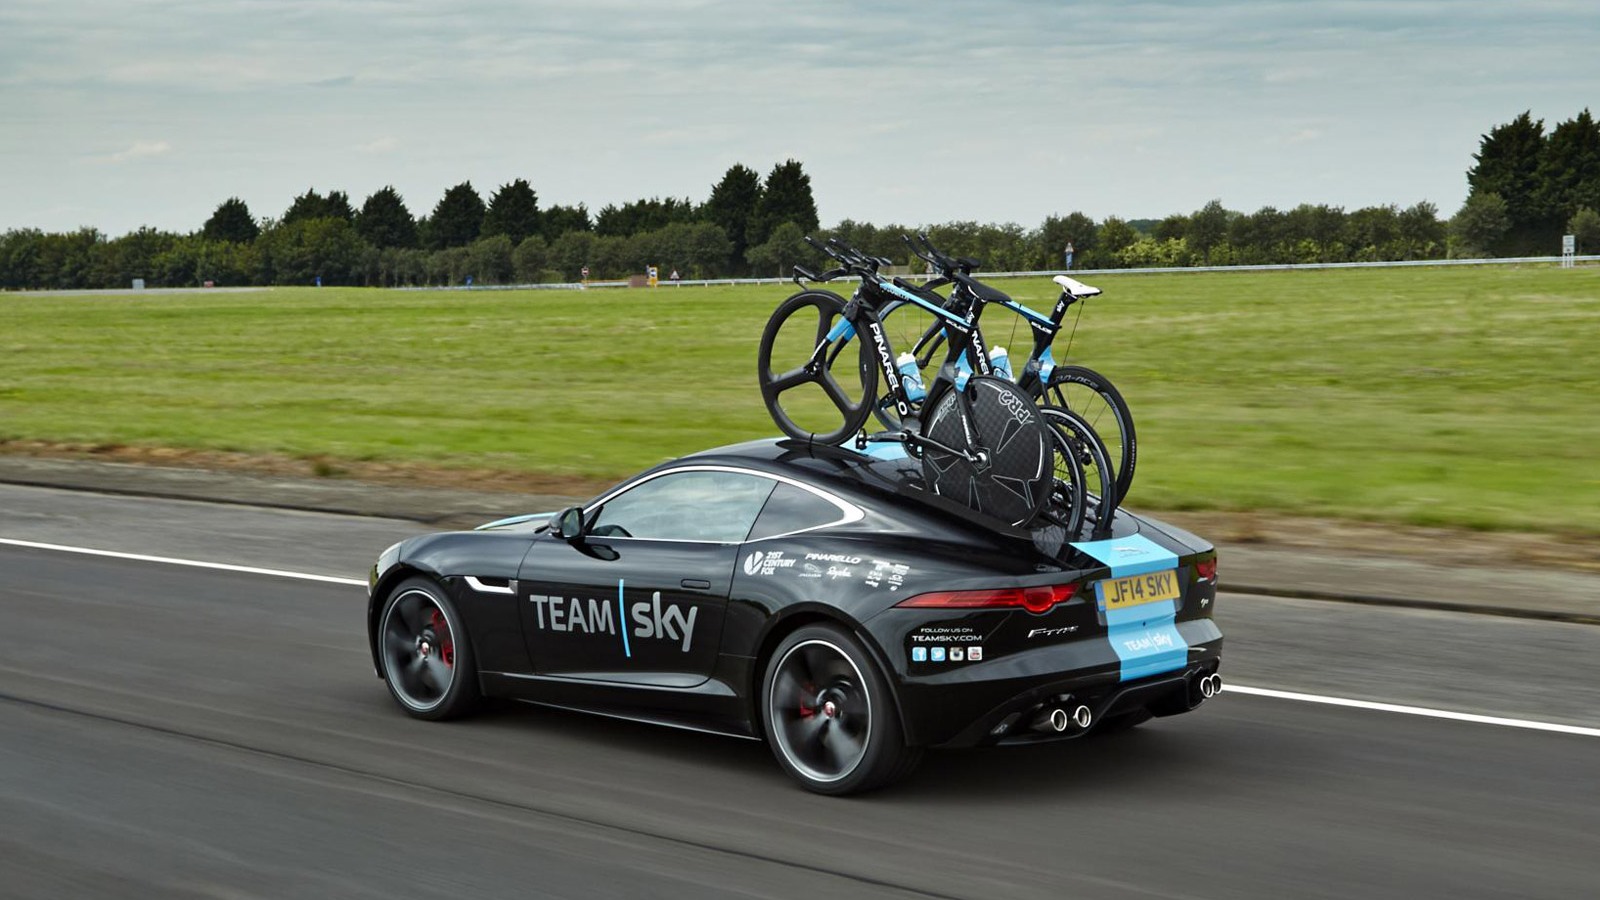 Jaguar F-type Built By Svo For Team Sky Tour De France - HD Wallpaper 